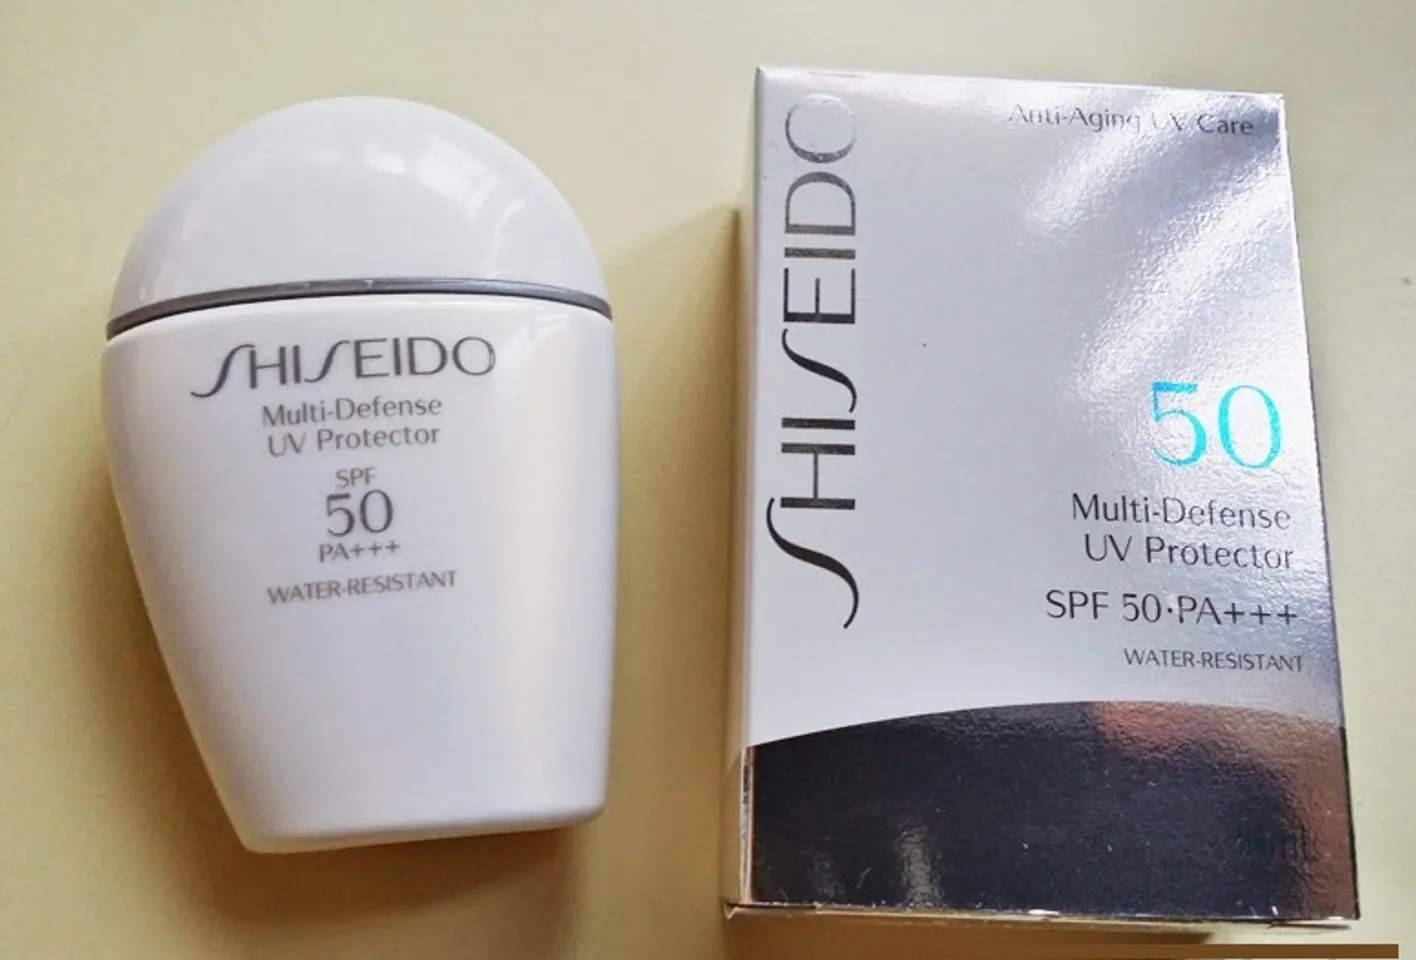 Shiseido Multi-Defense UV Protector chiết xuất thiên nhiên an toàn cho da